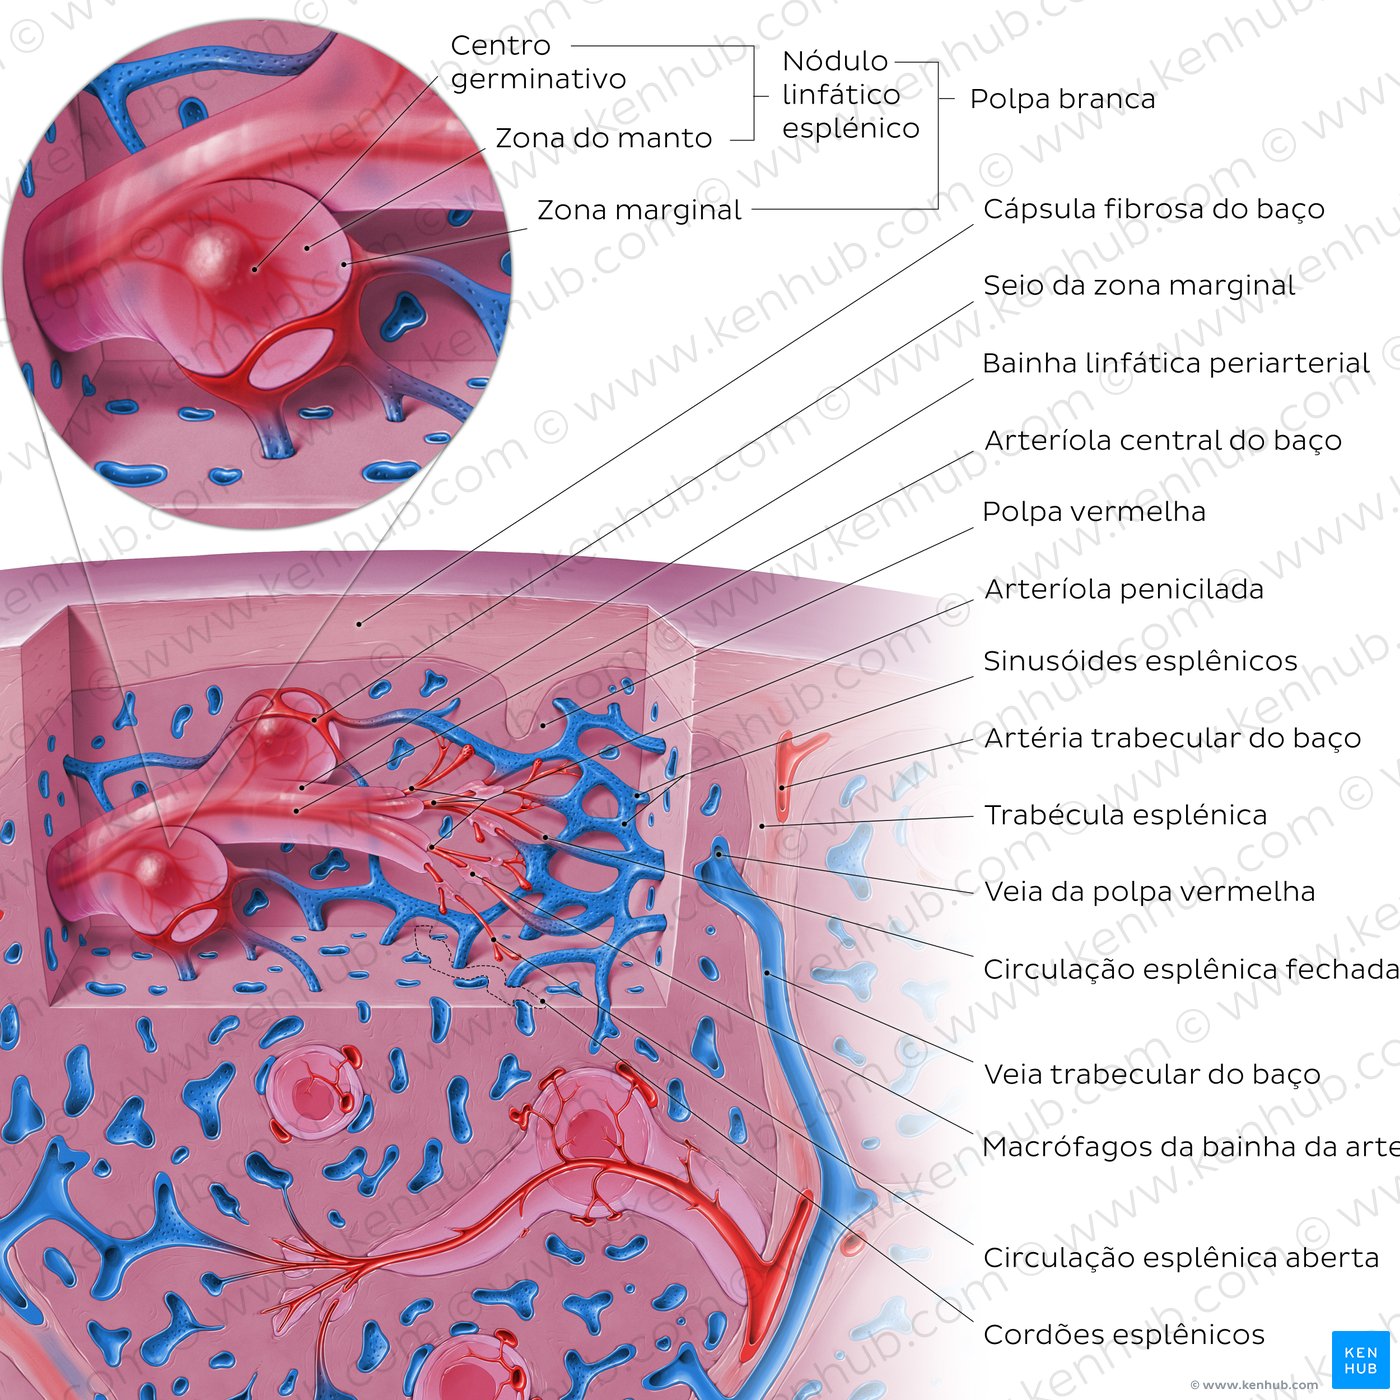 Anatomia microscópica do baço - um diagrama